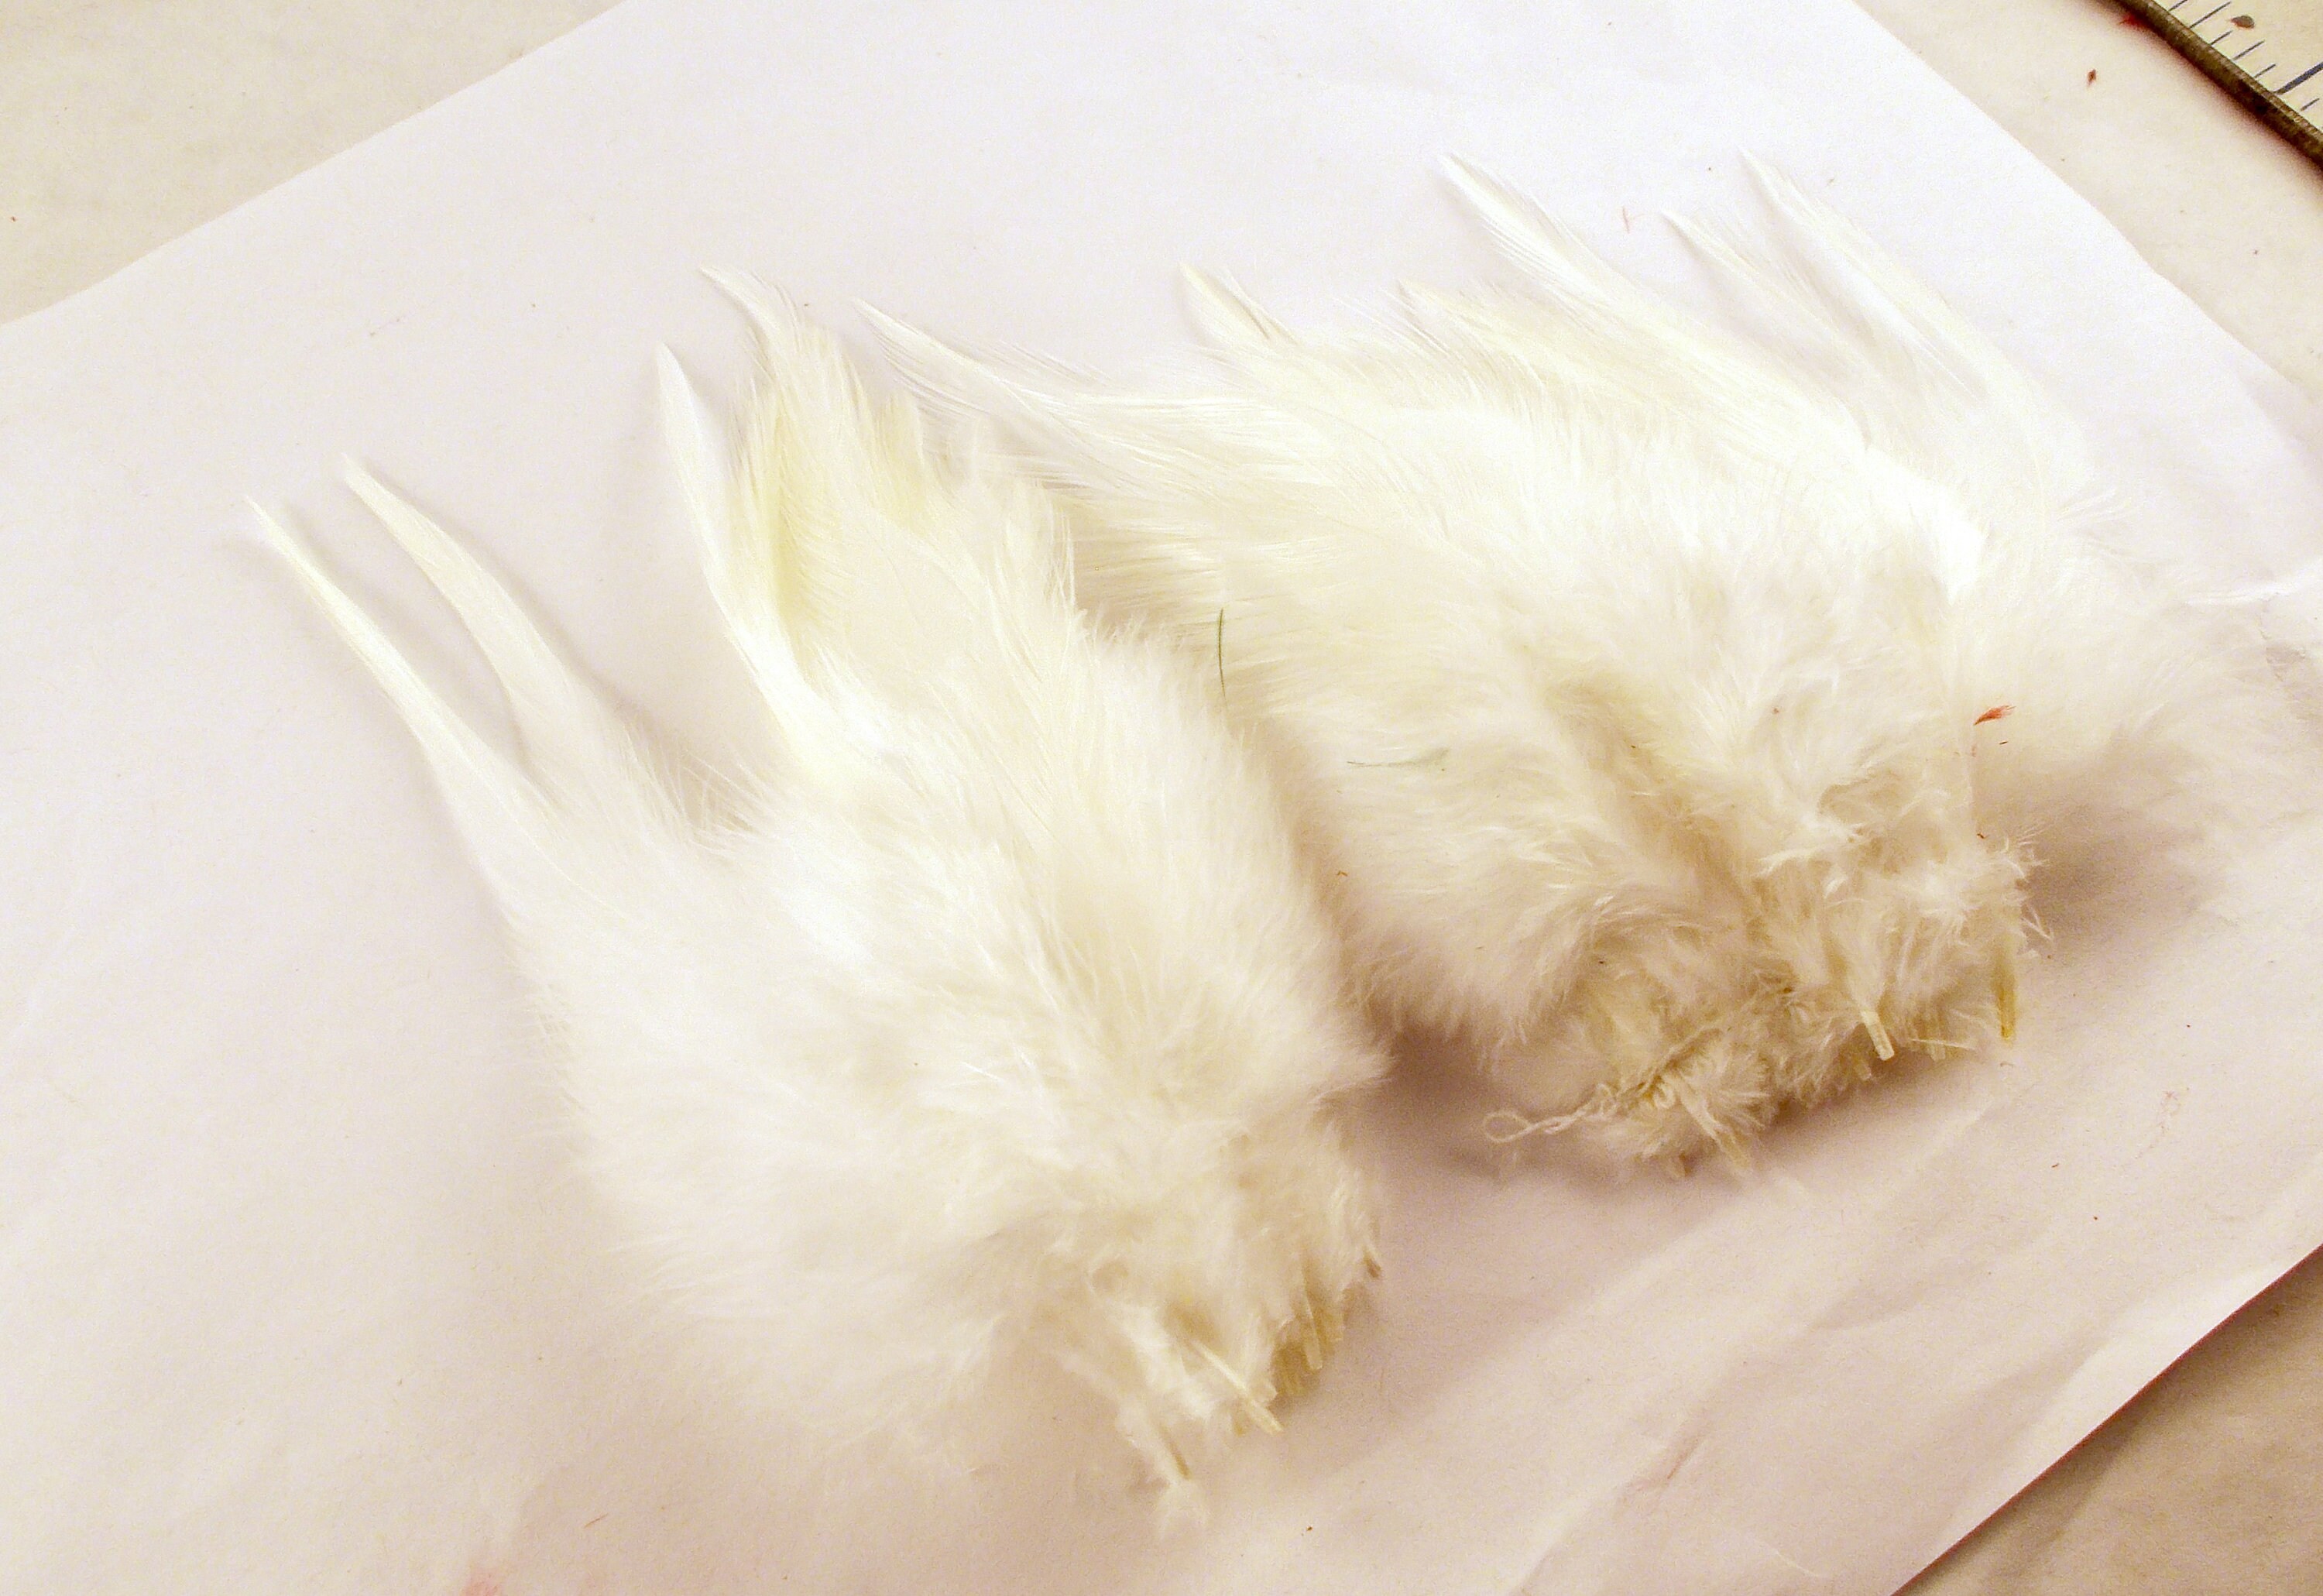 Natural White Feathers Saddle 40pcs Craft Feathers Wedding